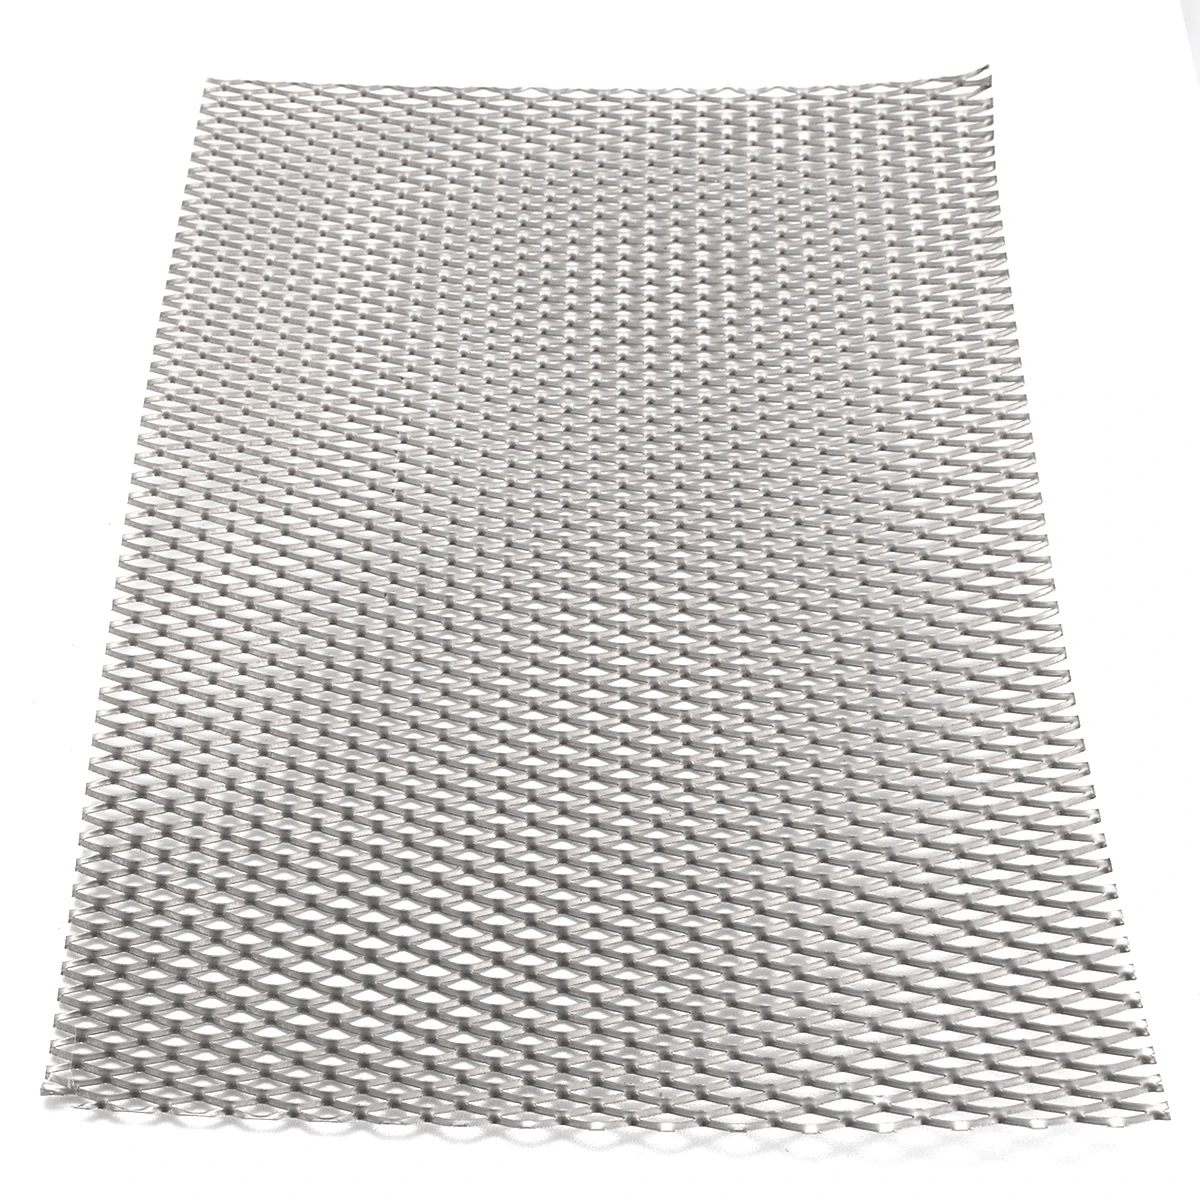 

Металлическая титановая сетка с отверстиями для листового металла, перфорированная пластина, увеличенный размер 200 мм * 300 мм * 0,5 мм для химического оборудования